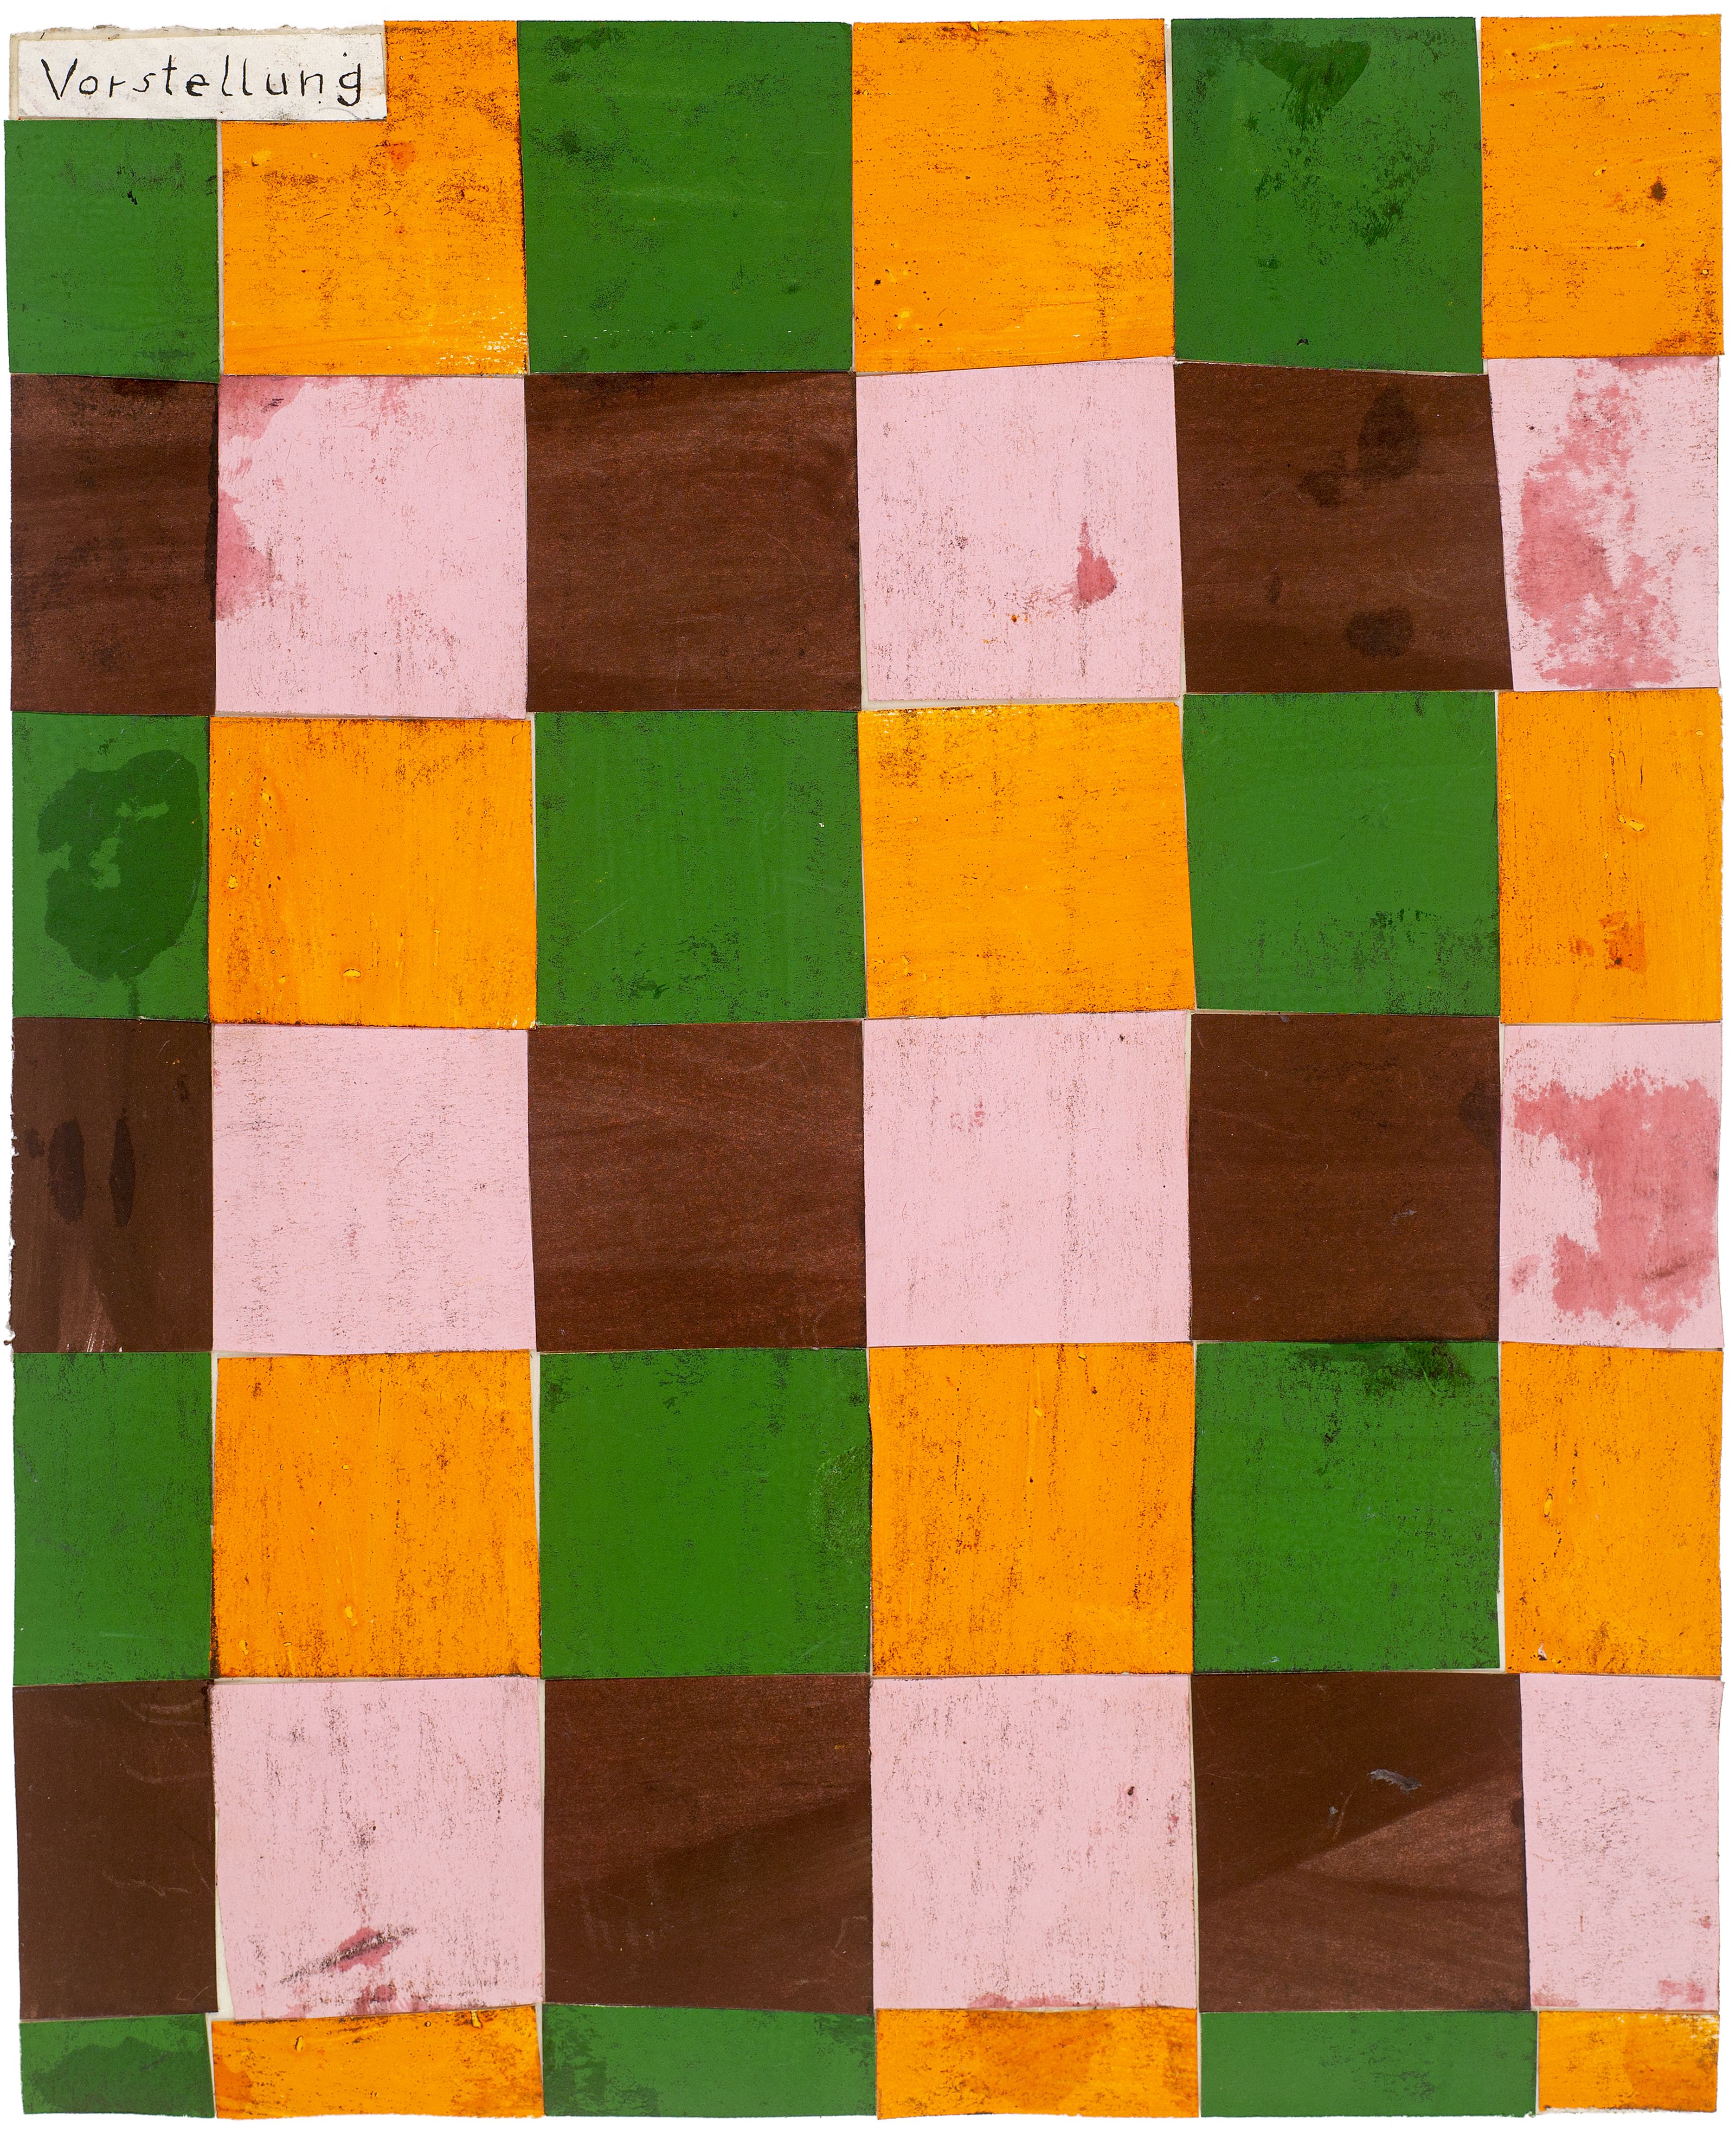 Martin Assig, Seelen #62a, Gouache, wax, paper, 30,5x25 cm, 2020